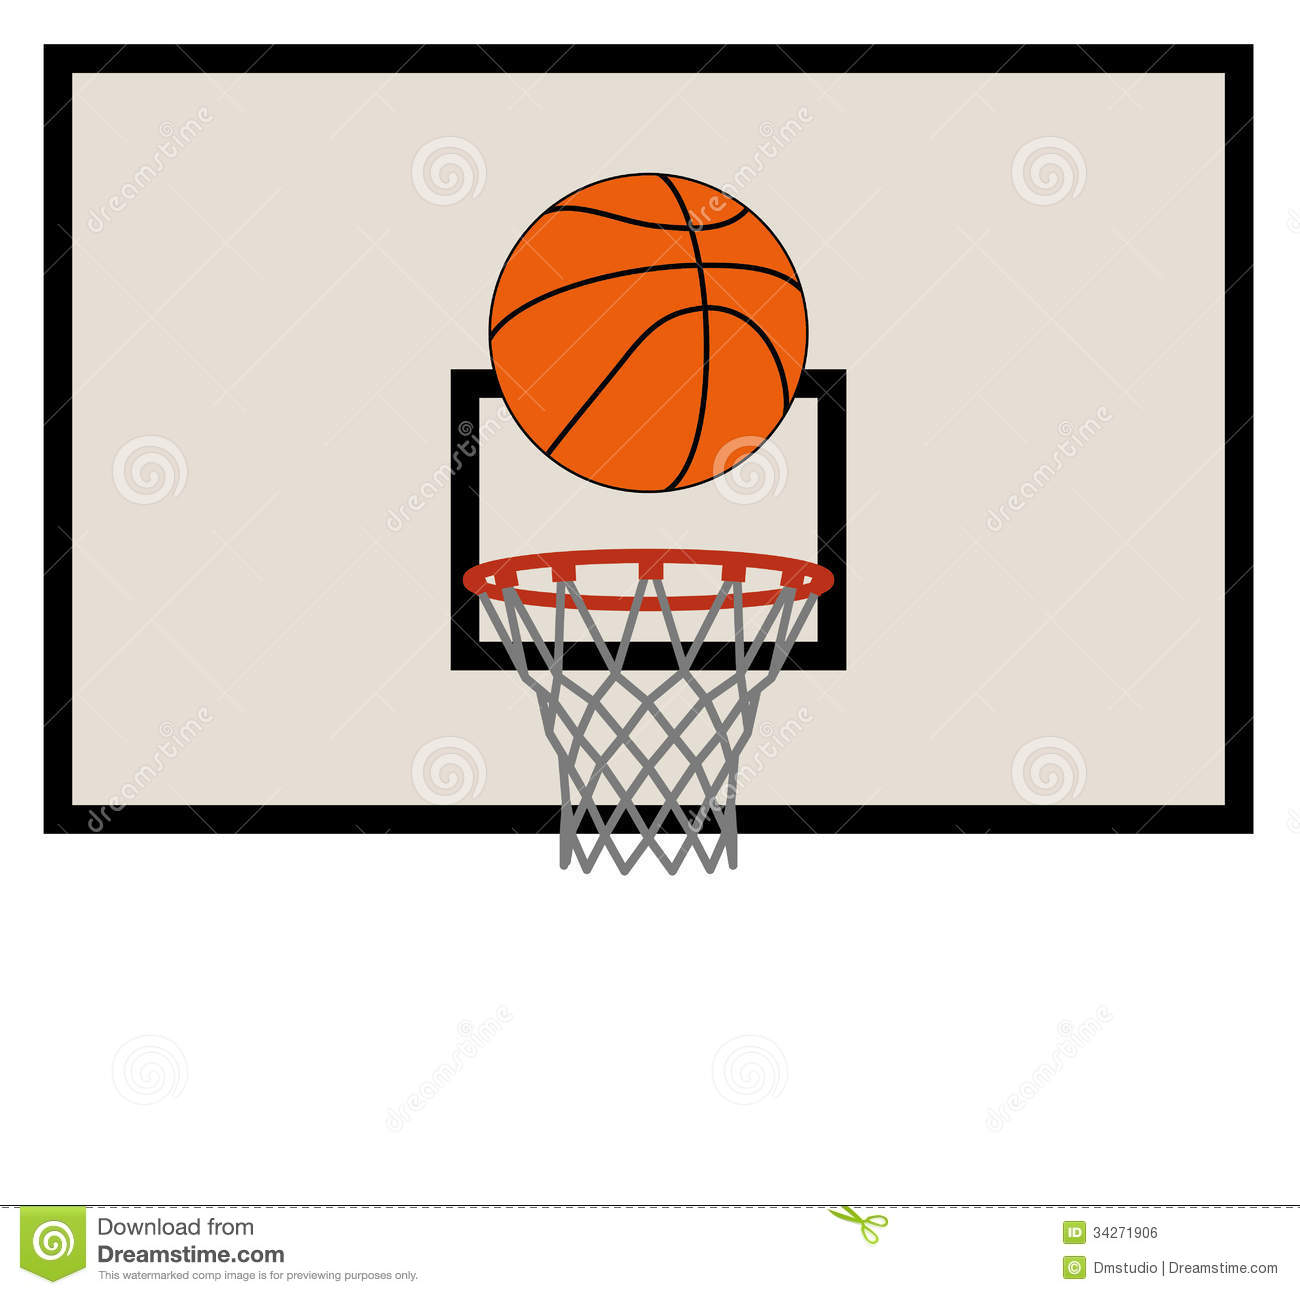 Basketball Nets and Backboards